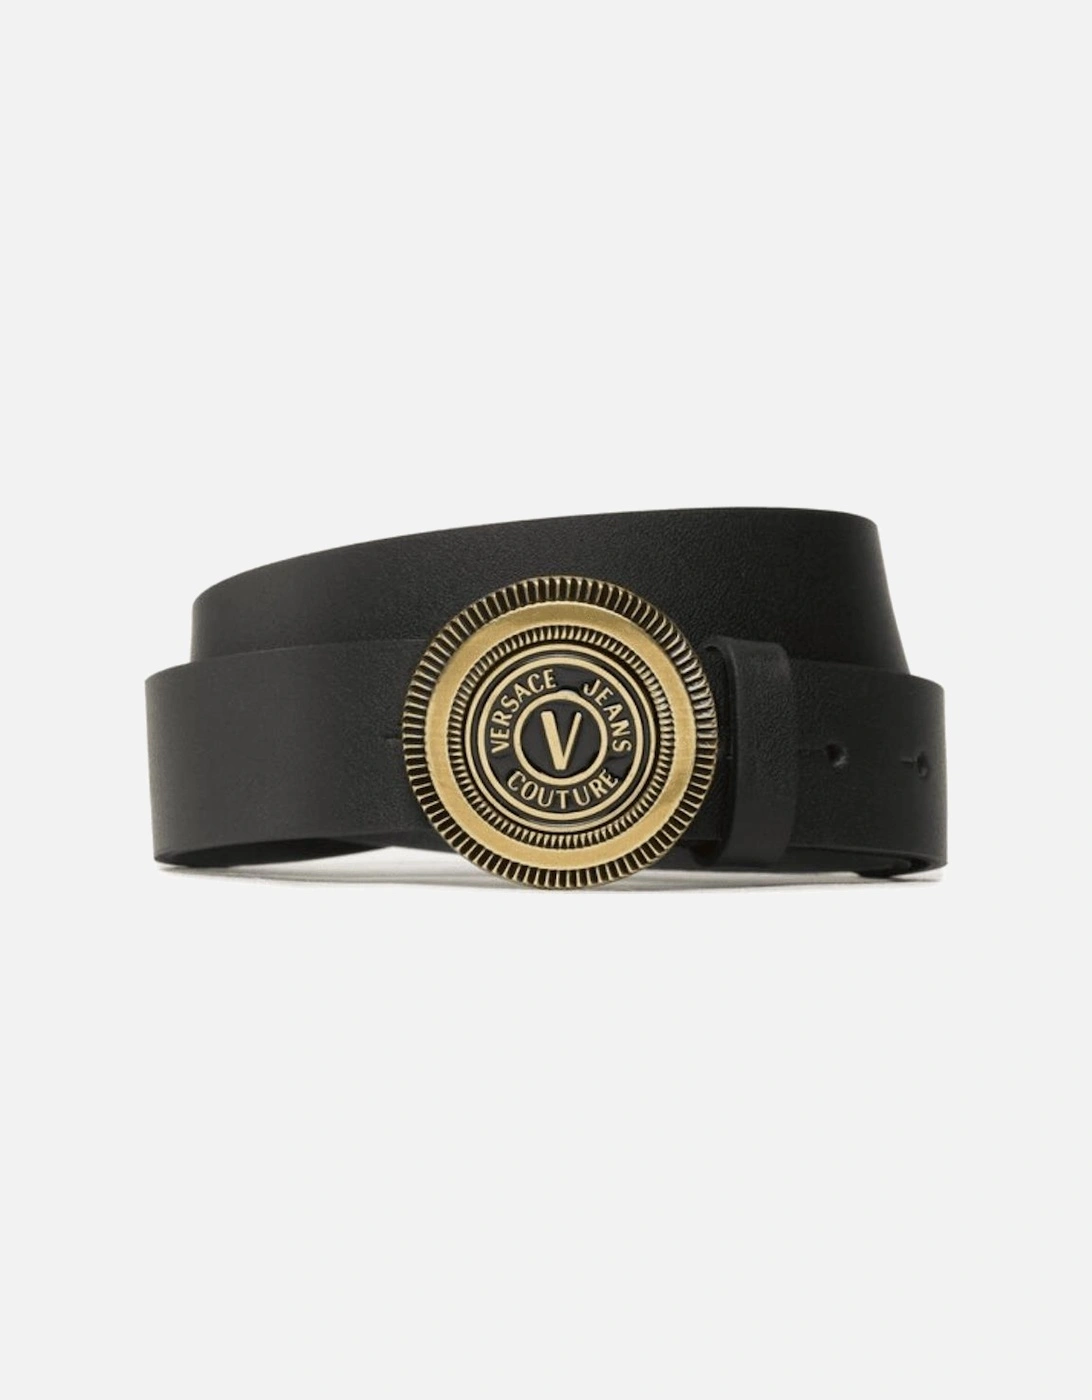 Gold V-Emblem Buckle Black Leather Belt, 3 of 2